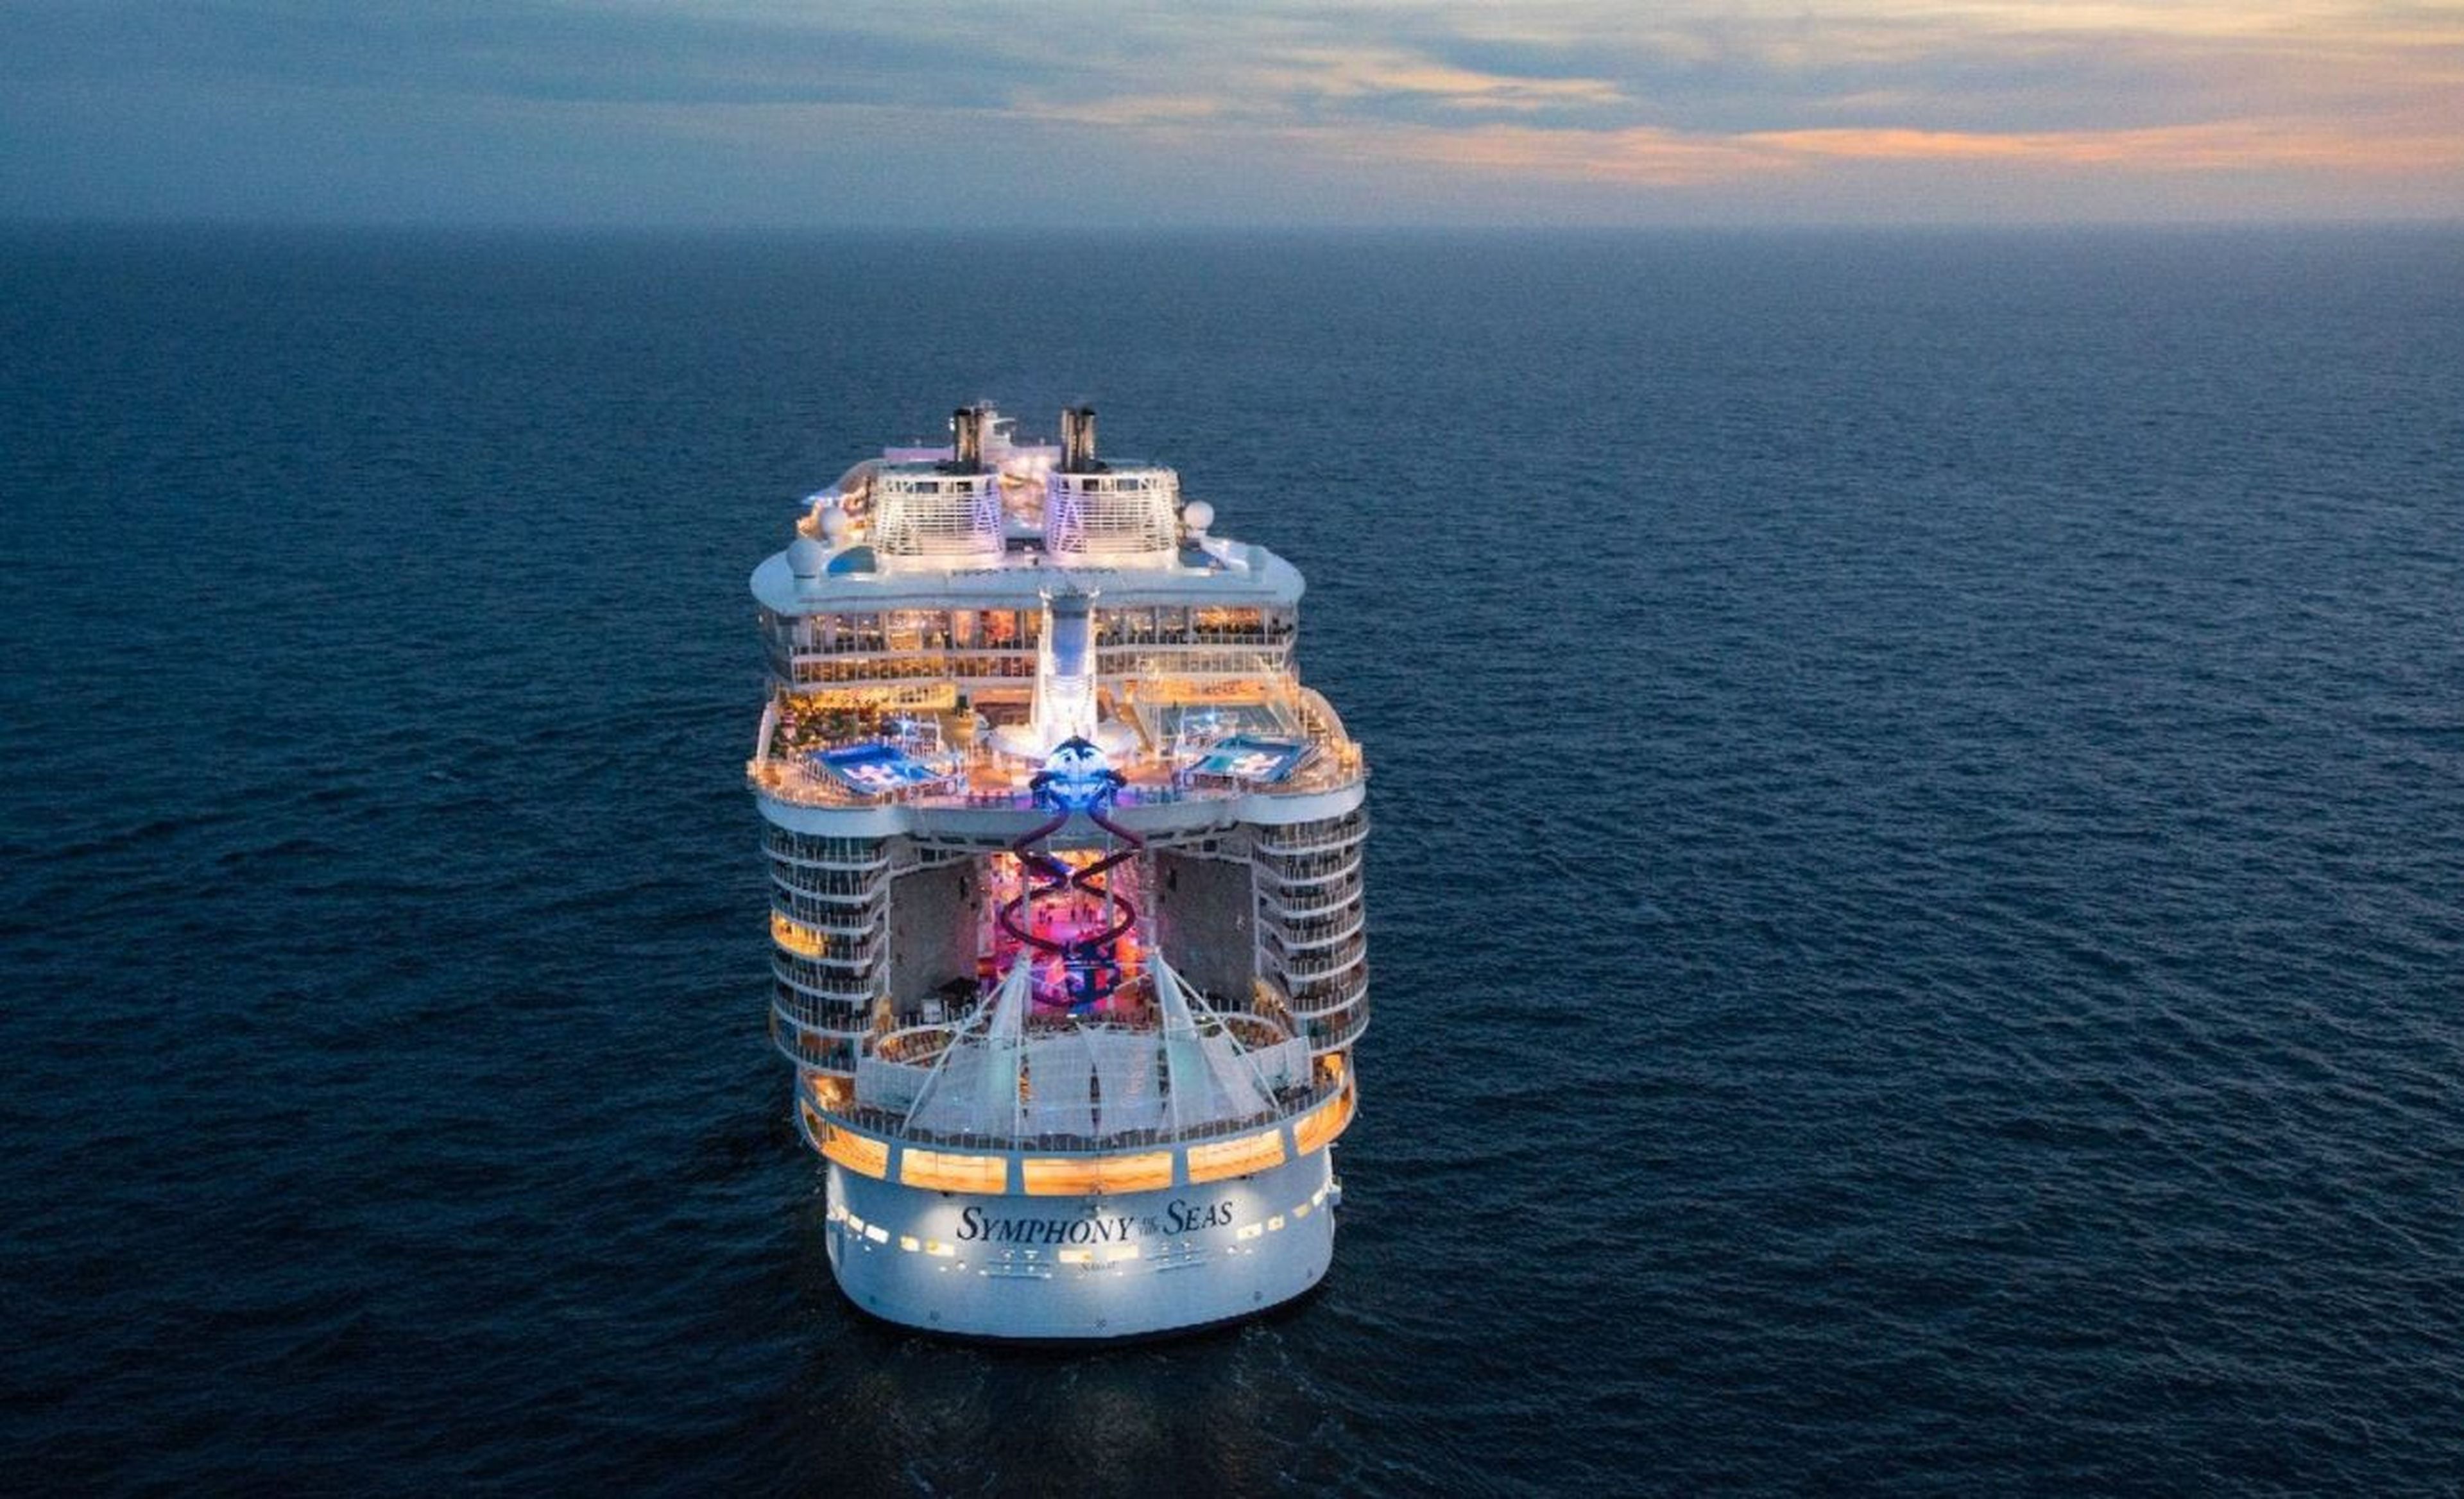 El Symphony of the Seas es el crucero más grande del mundo. Pero su reinado tiene los días contados - Royal Caribbean.